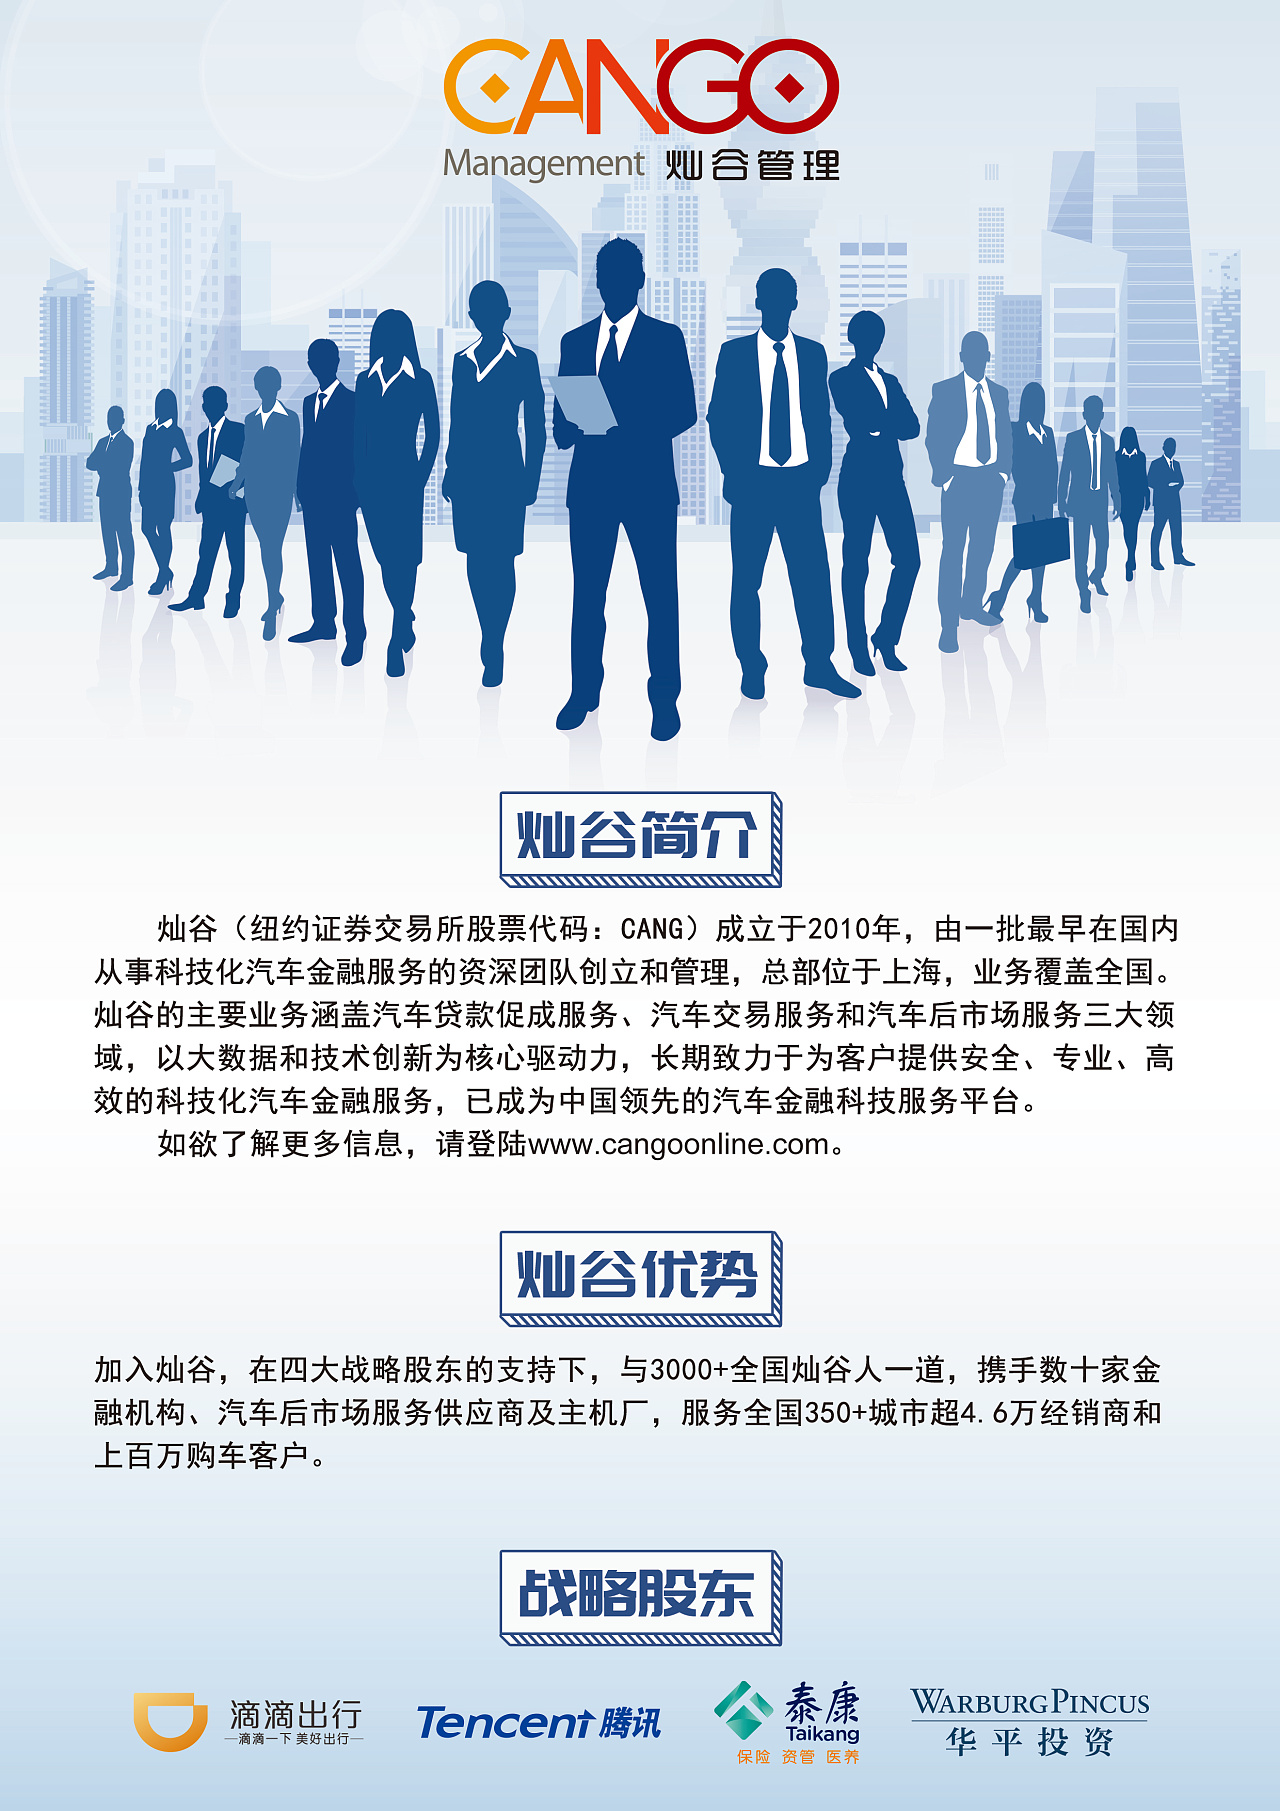 招聘设计信息_招聘信息海报图片 招聘信息海报设计素材 红动中国(2)